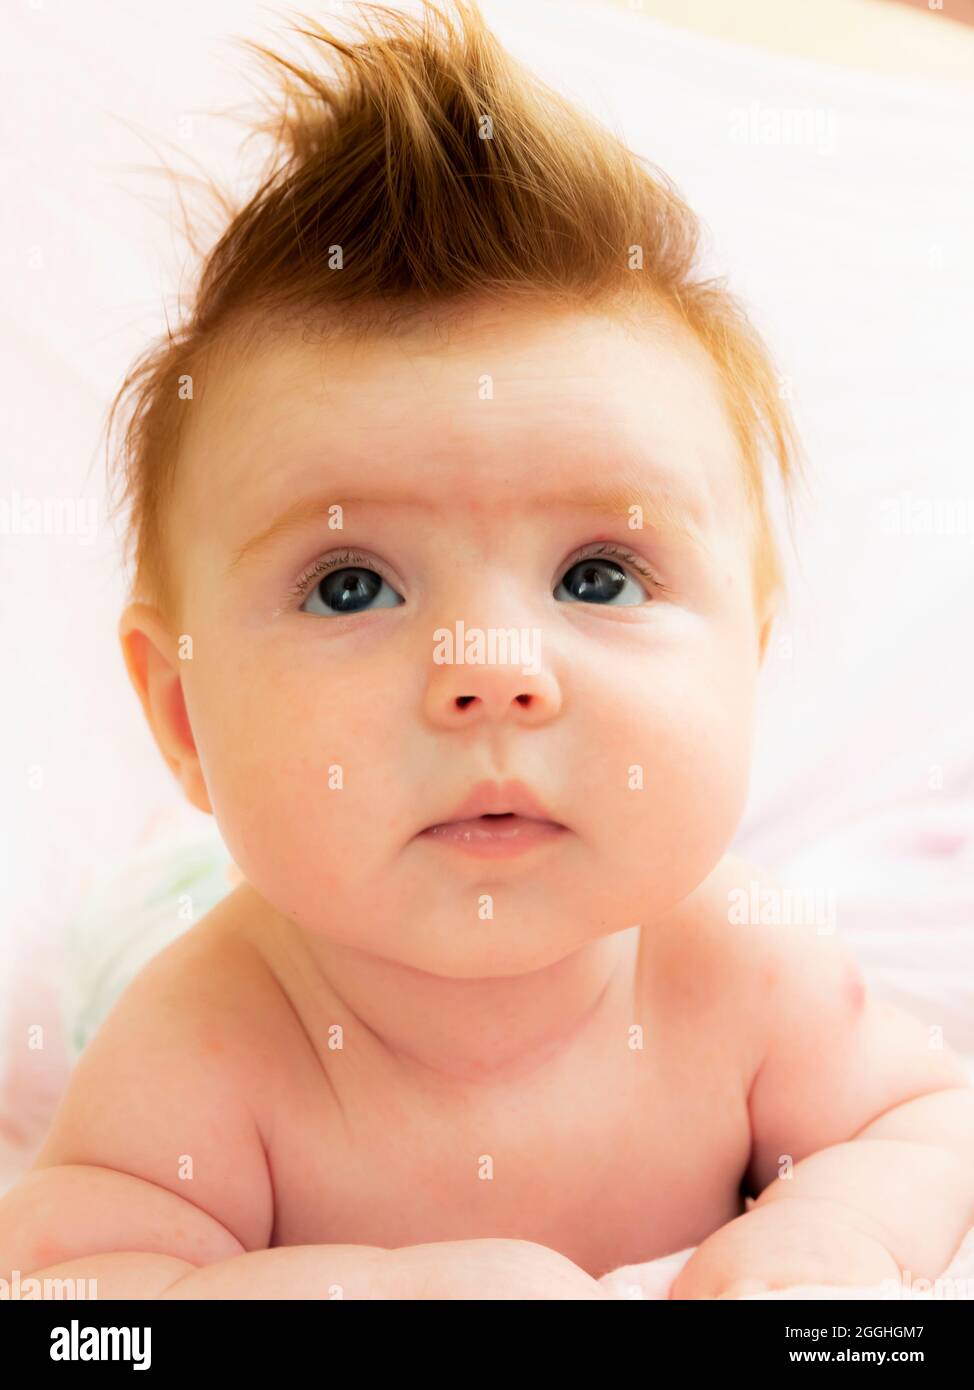 Nahaufnahme Porträt von fünf Monate alten Baby, liegt auf dem Bauch, Kopf und Augen sind angehoben Stockfoto